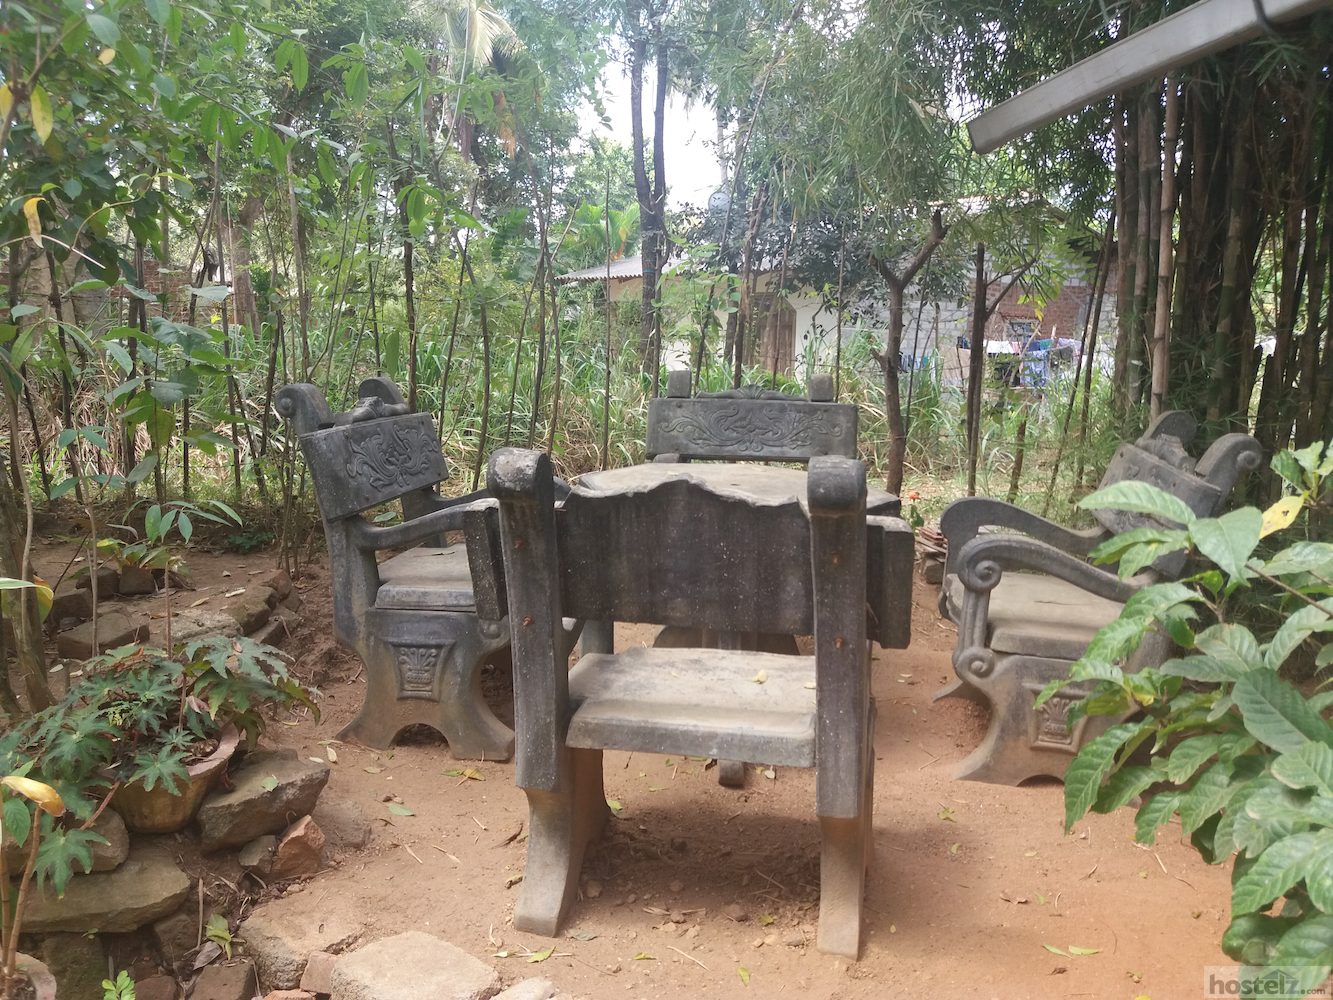 stone garden chairs